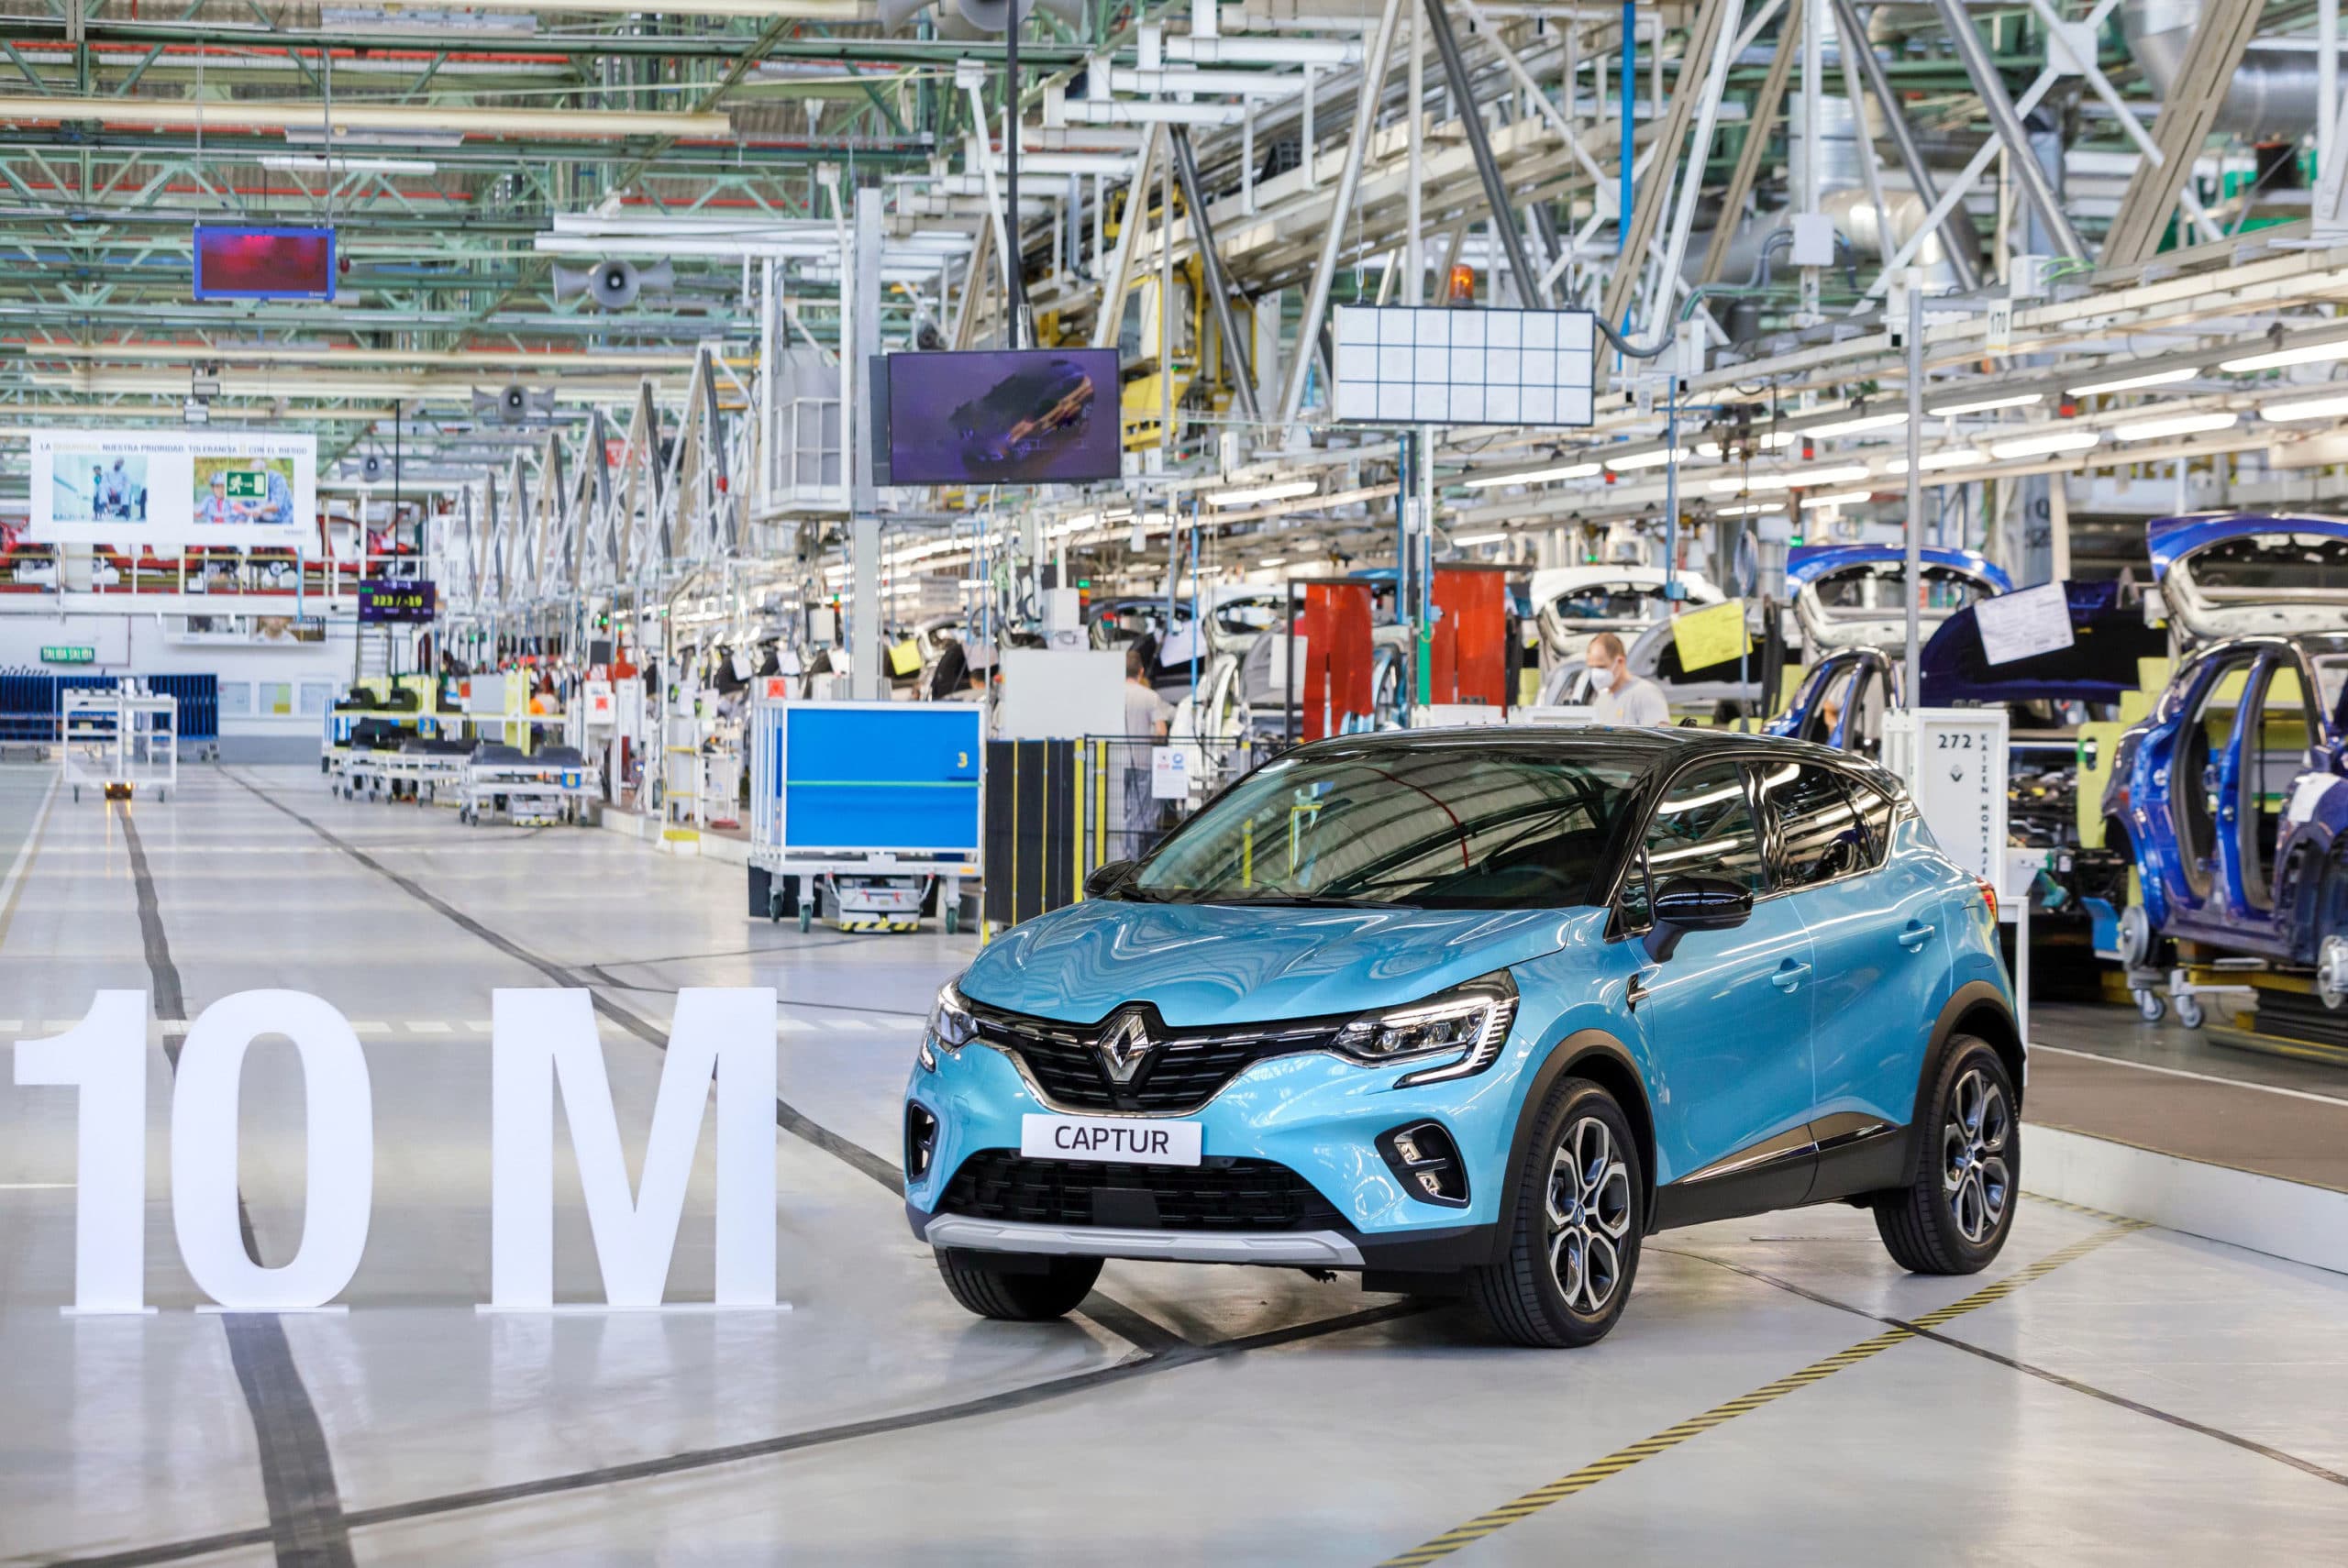 Renault condiciona el plan industrial a la negociación del nuevo convenio